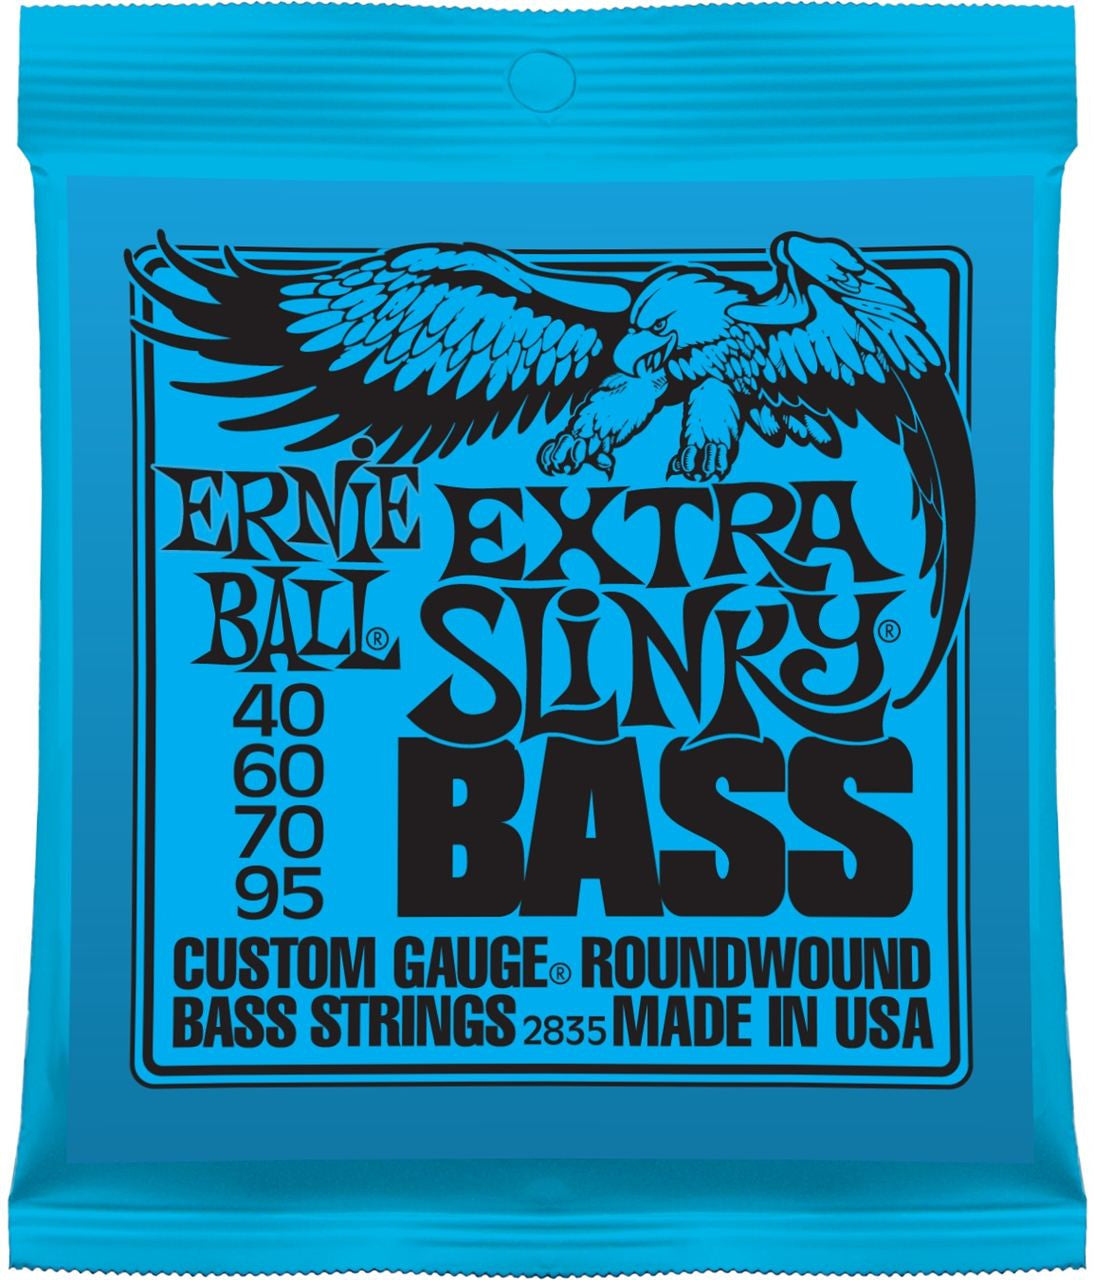 Ernie Ball Bass Strings (40-95)